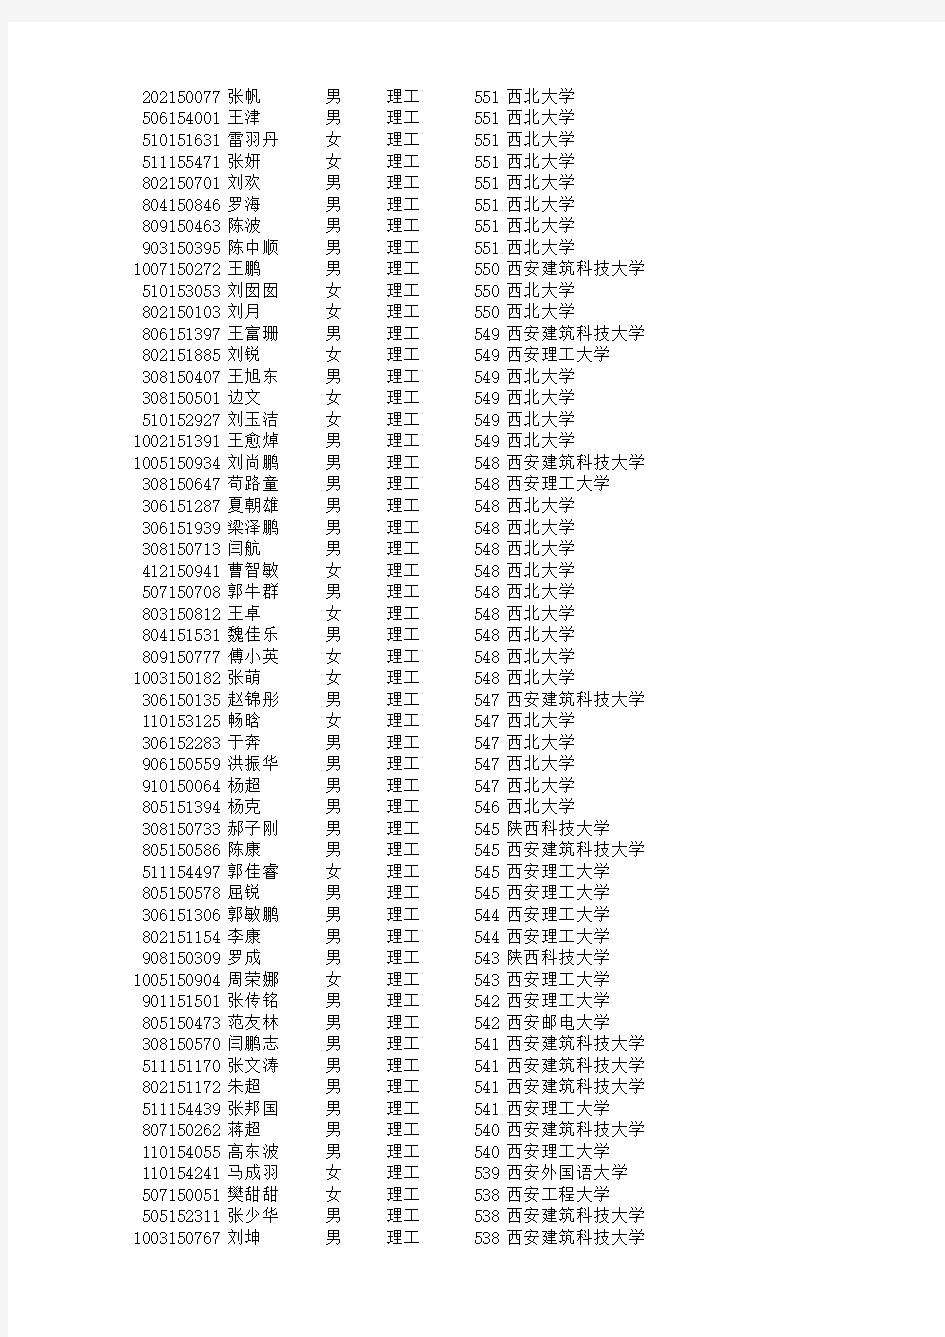 2015年陕西省普通高校招生单设本科B段录取情况统计表及名单